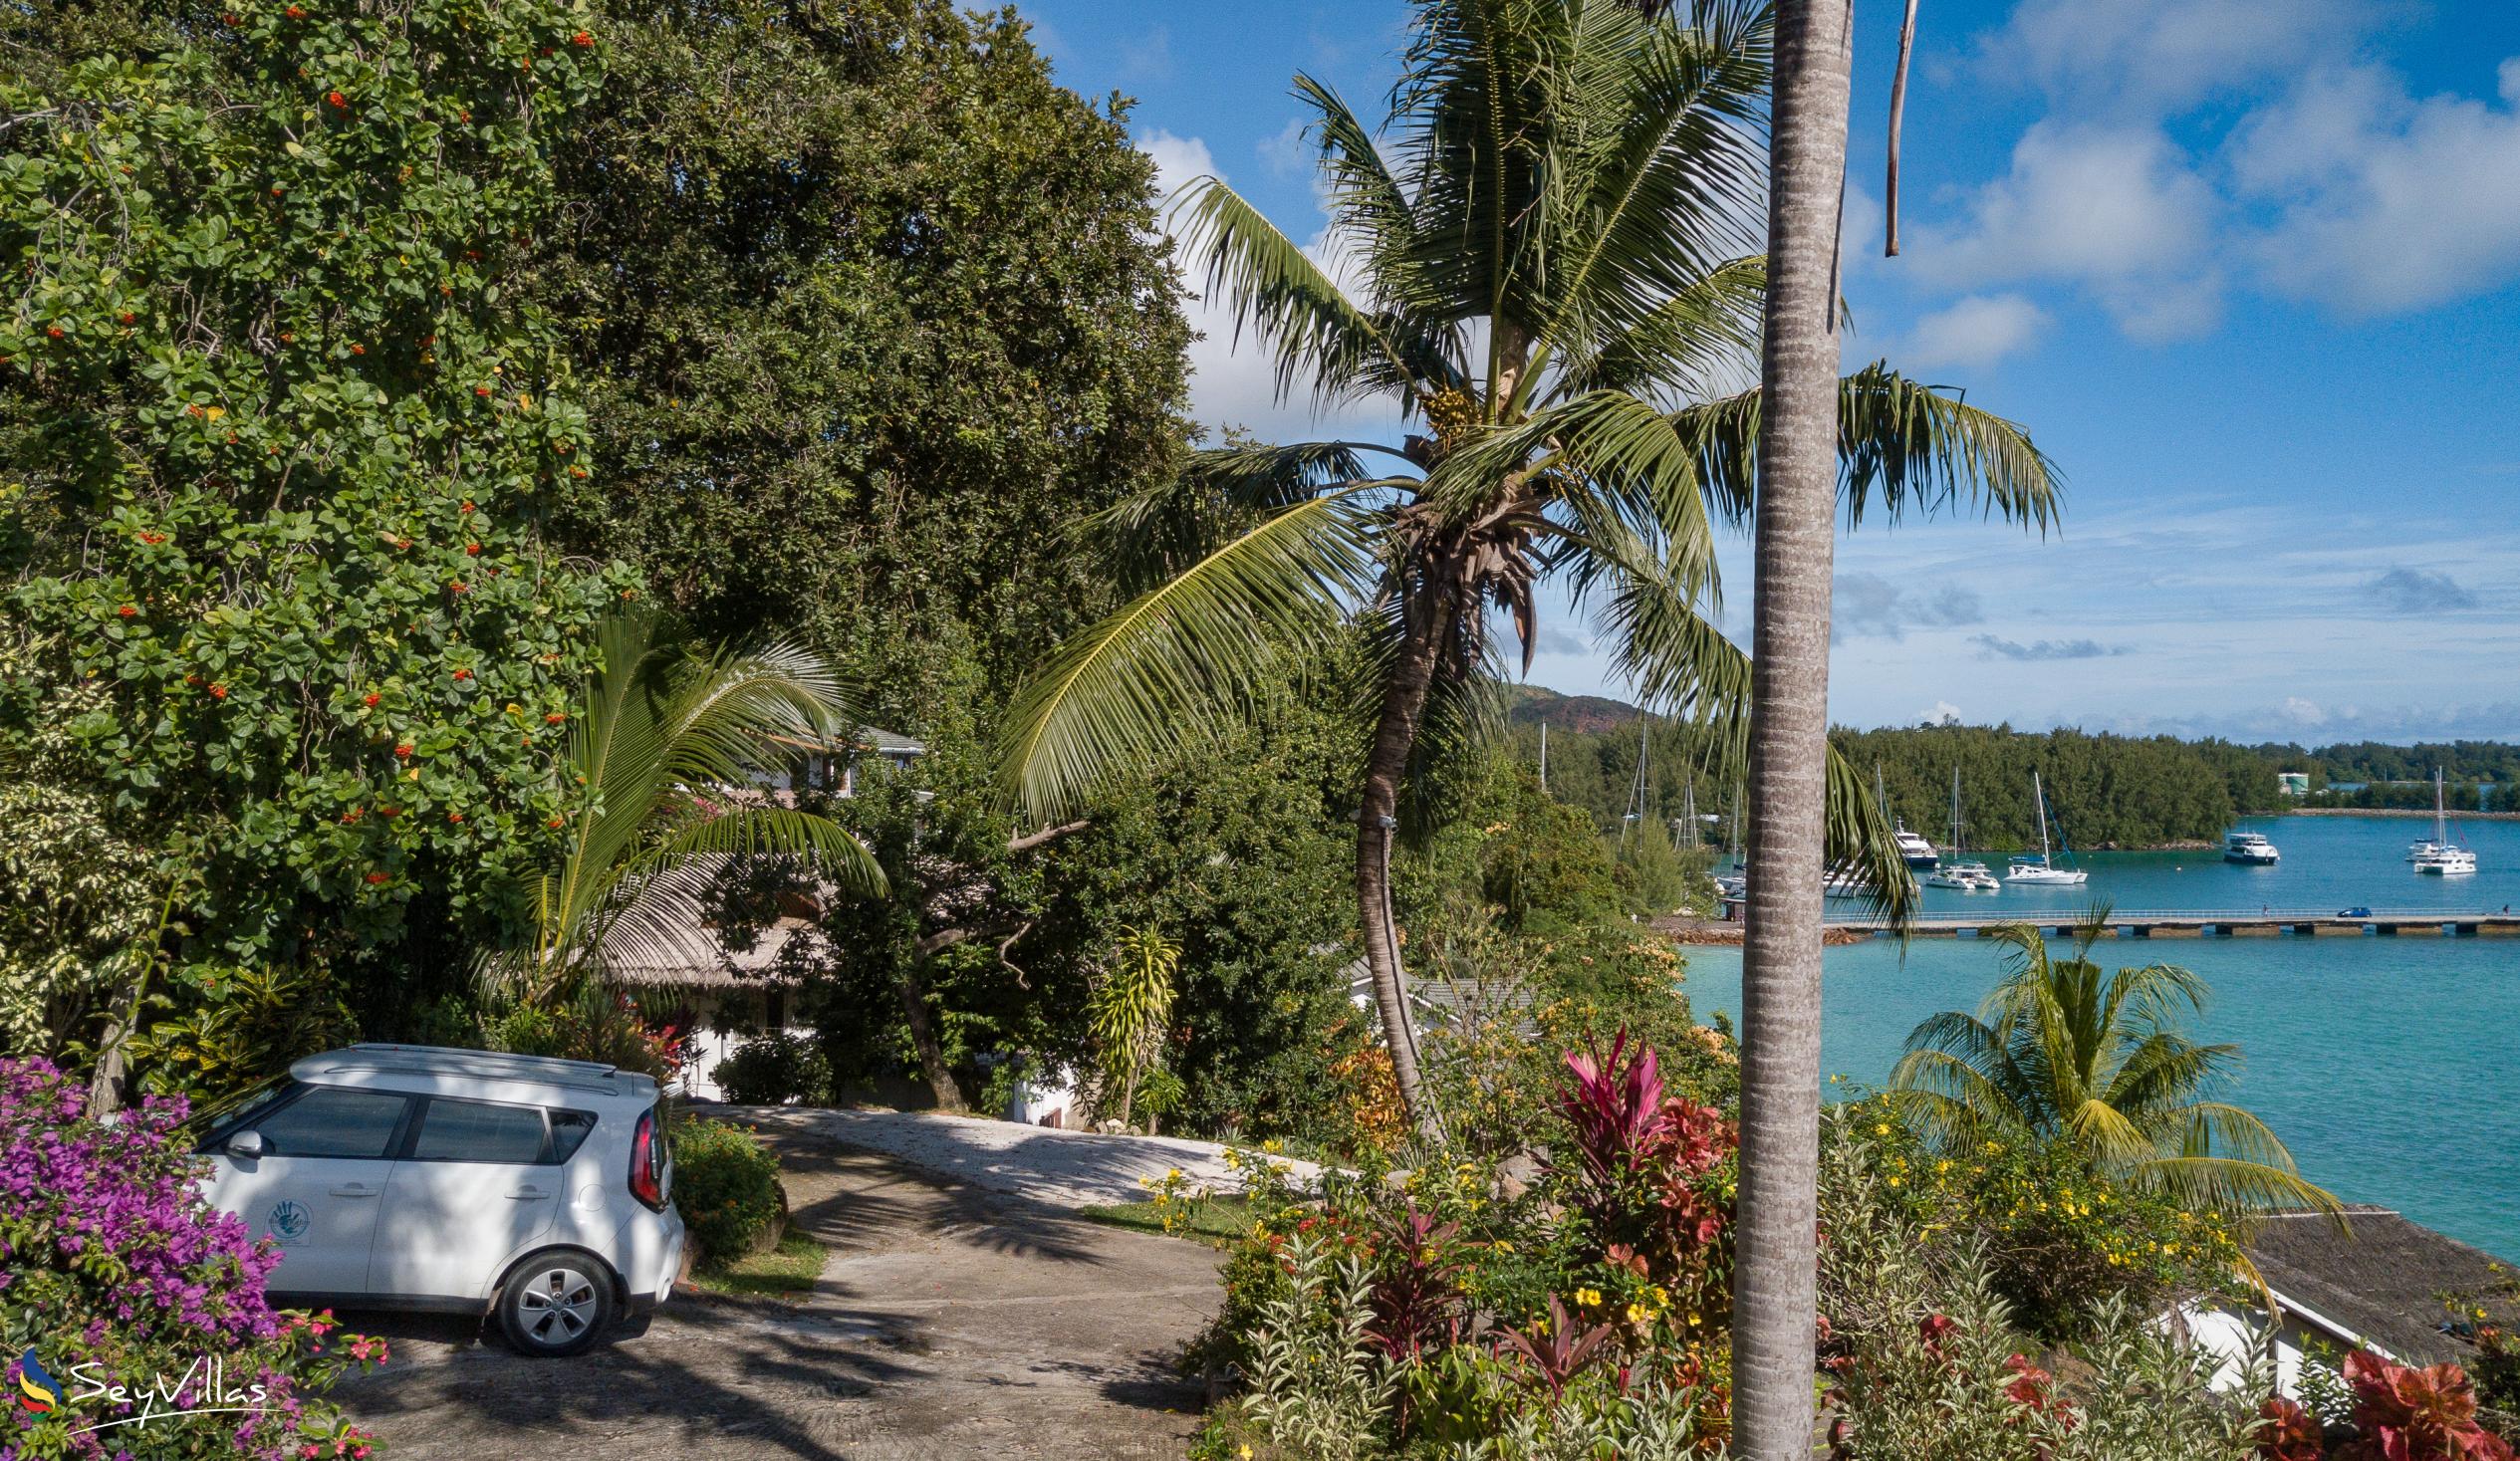 Foto 20: Le Grand Bleu Villas - Posizione - Praslin (Seychelles)